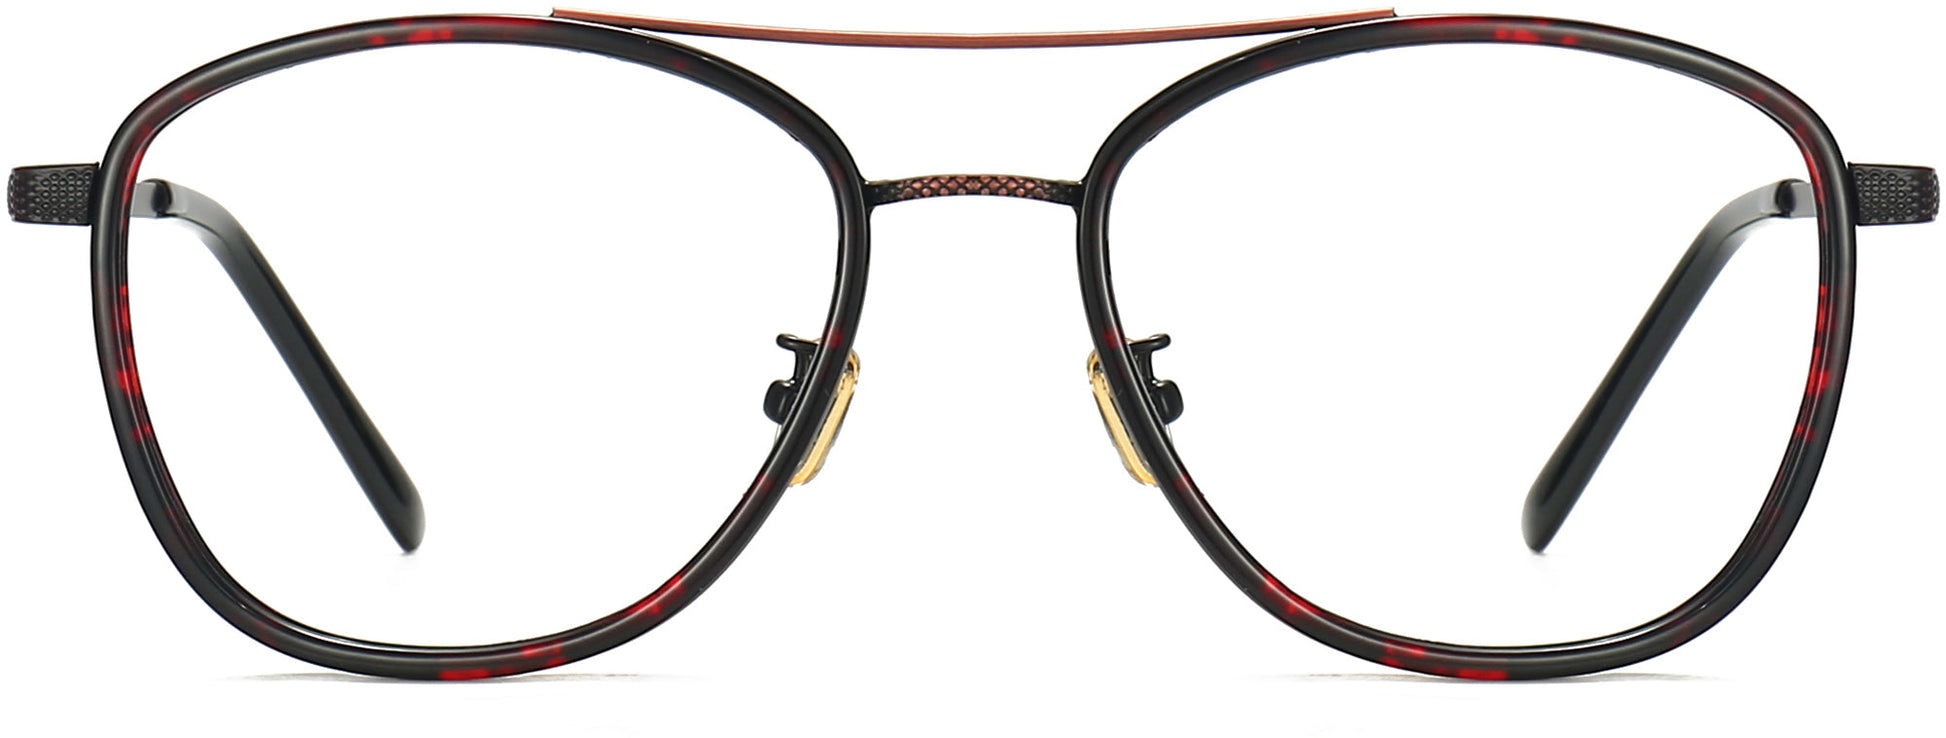 Jaime Aviator Tortoise Eyeglasses from ANRRI, front view